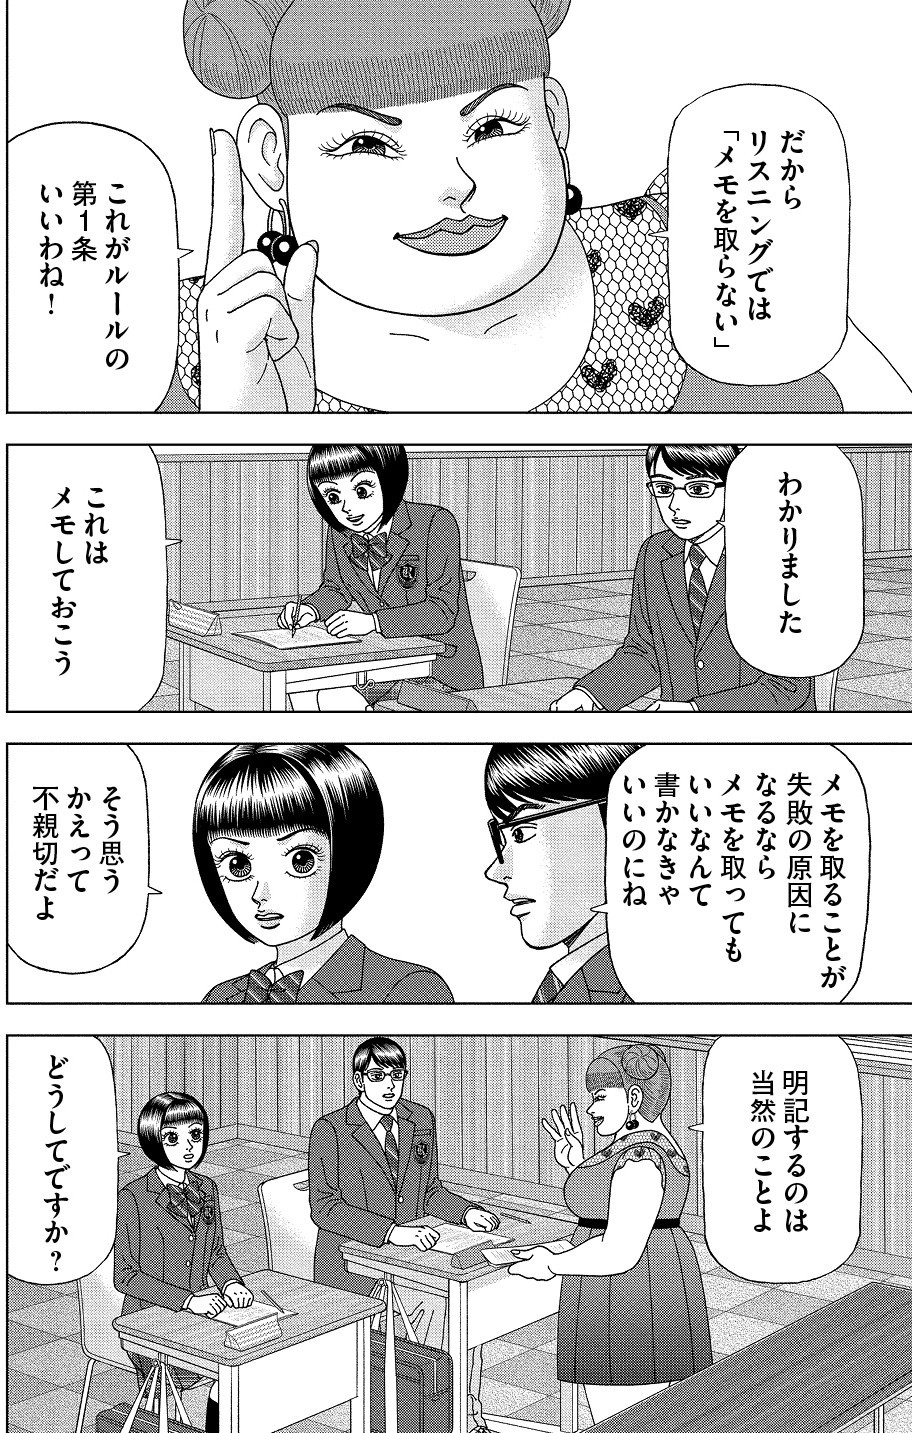 【漫画】ドラゴン桜2 第31話 東大リスニング攻略法／学び方を ...